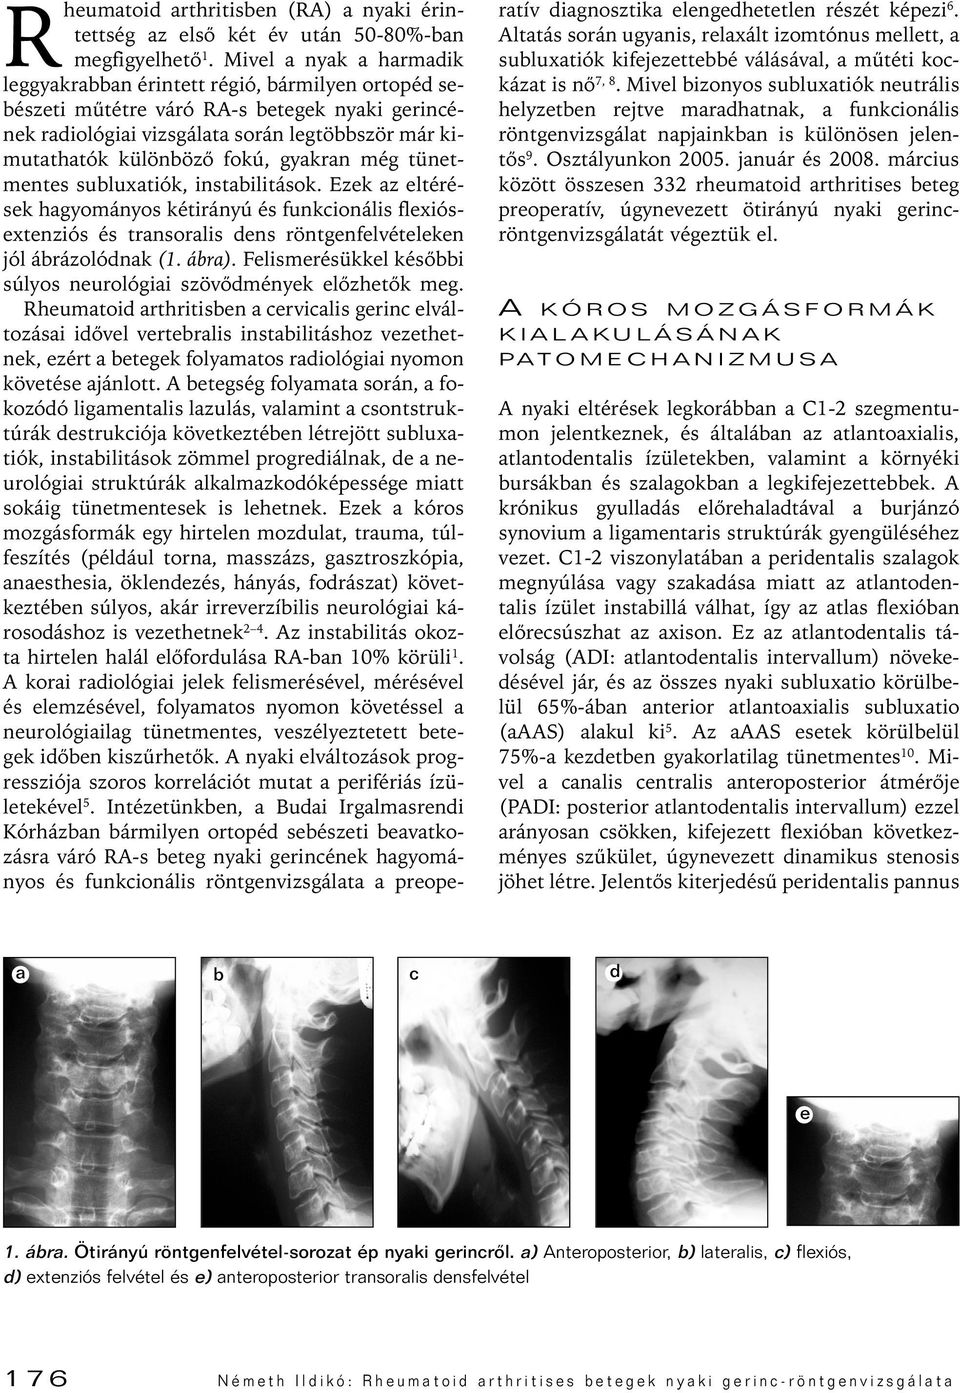 a nyaki gerinc rheumatoid arthritise nyaki osteochondrosis 1. szakasz